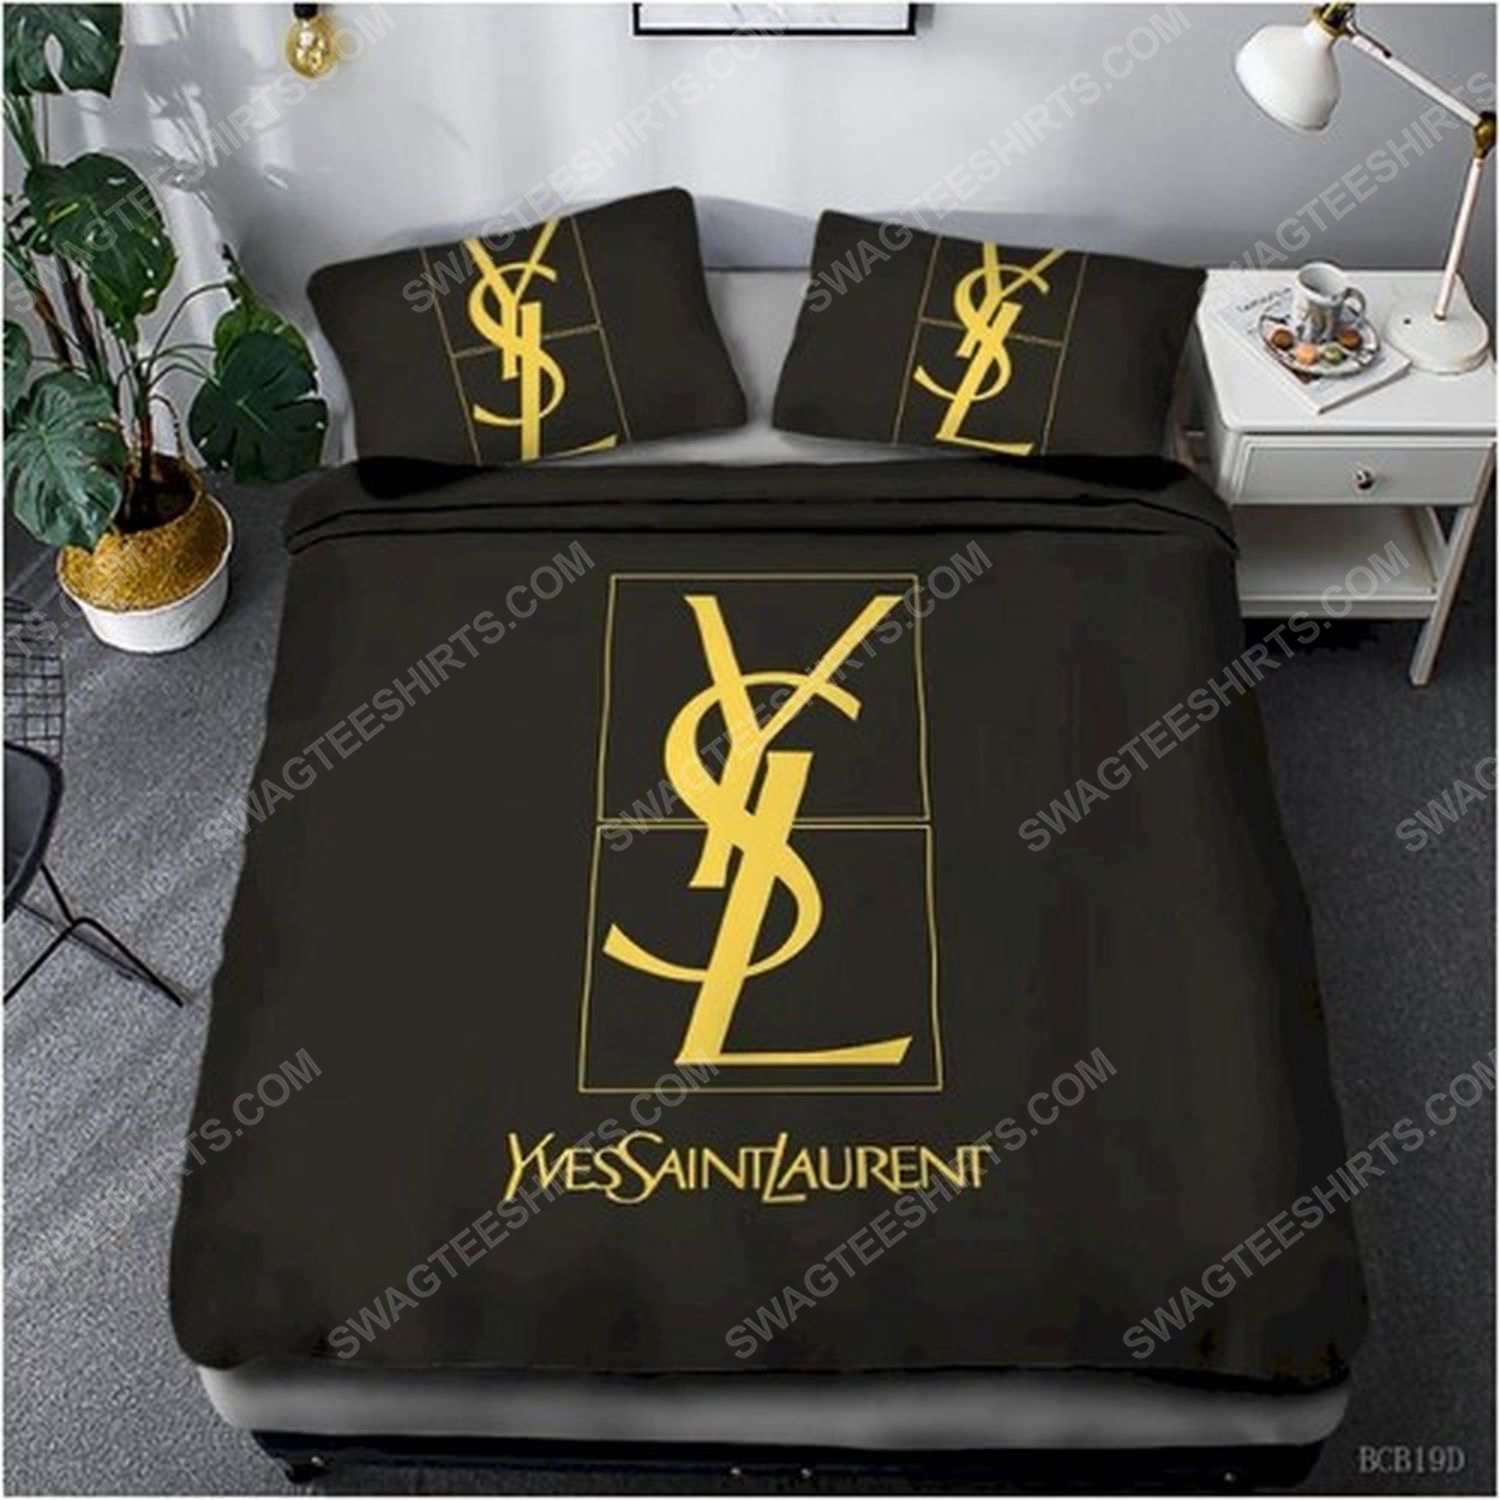 Yves saint laurent full print duvet cover bedding set 1